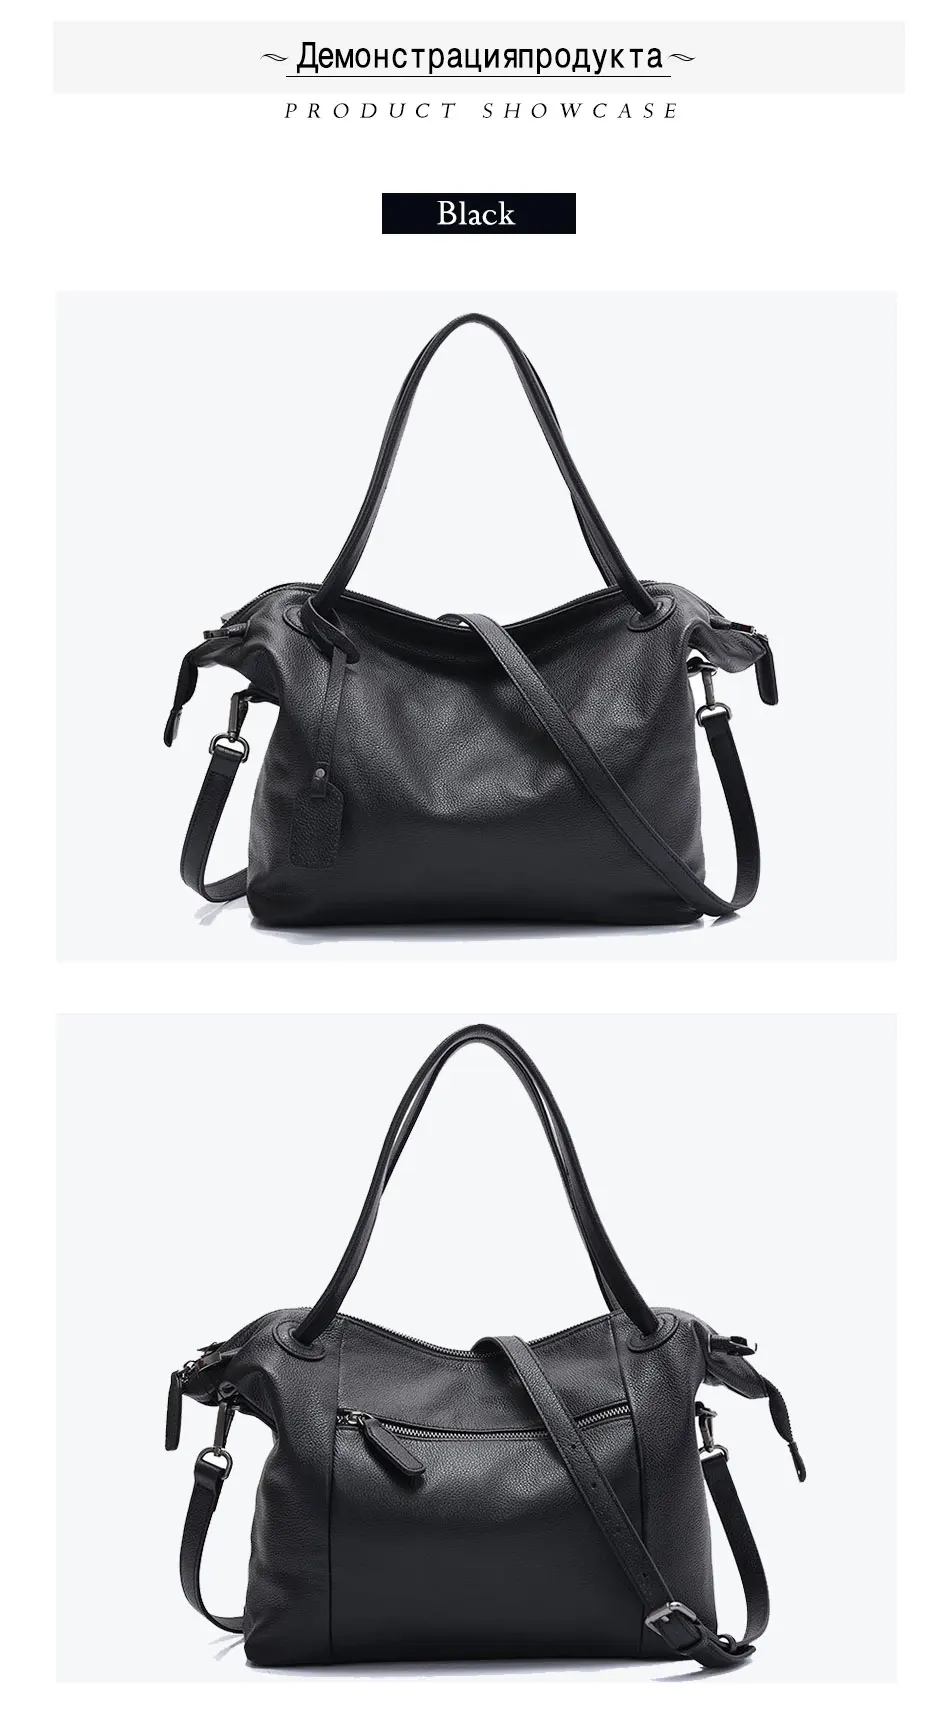 Zency натуральная кожа модная женская сумка через плечо большая вместительность Женская сумка через плечо черная сумка-тоут элегантная сумка